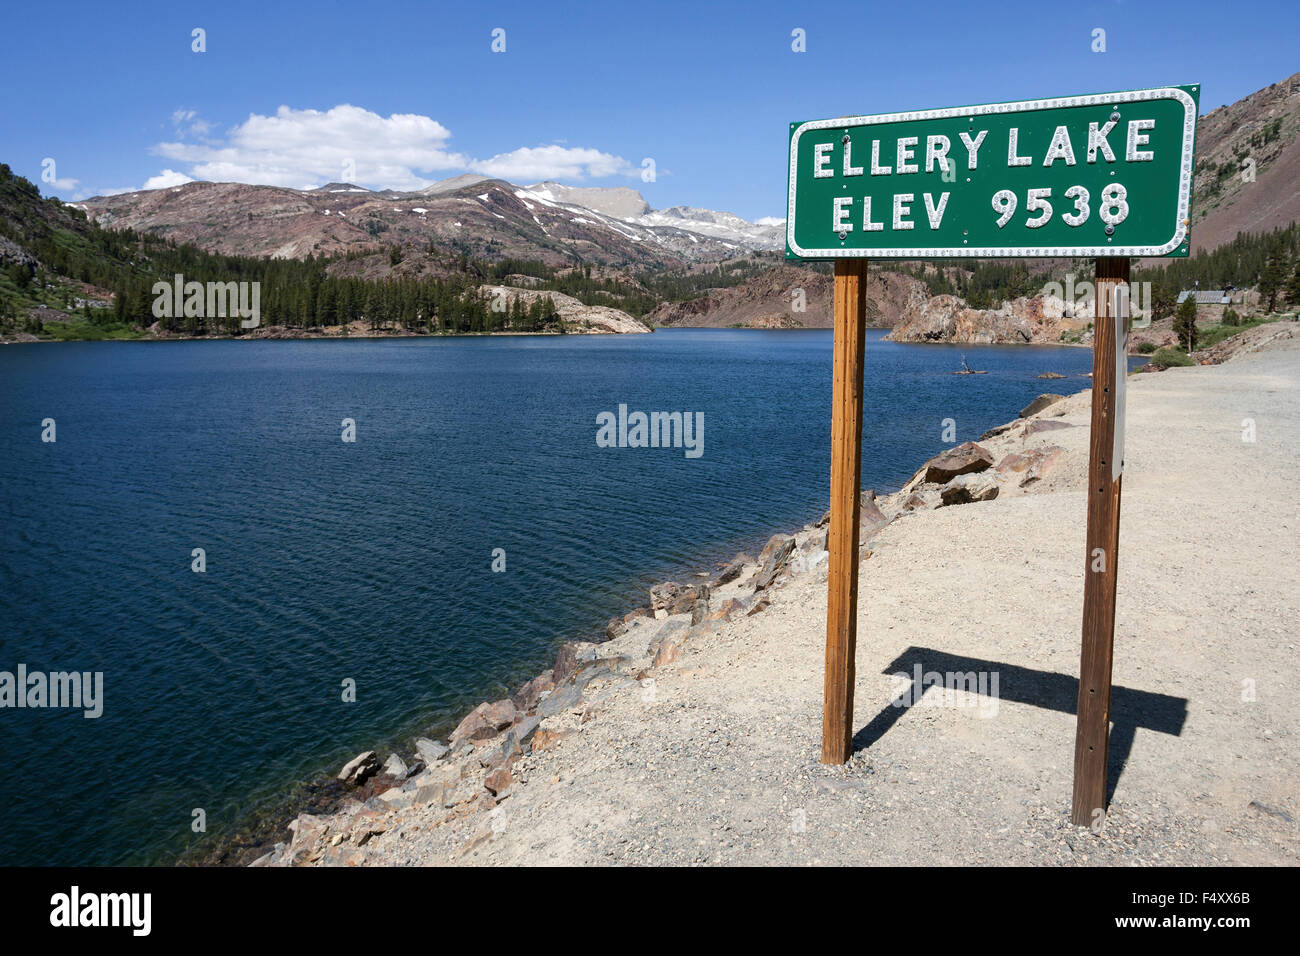 Ellery Lake à Tioga Road, California, USA Banque D'Images